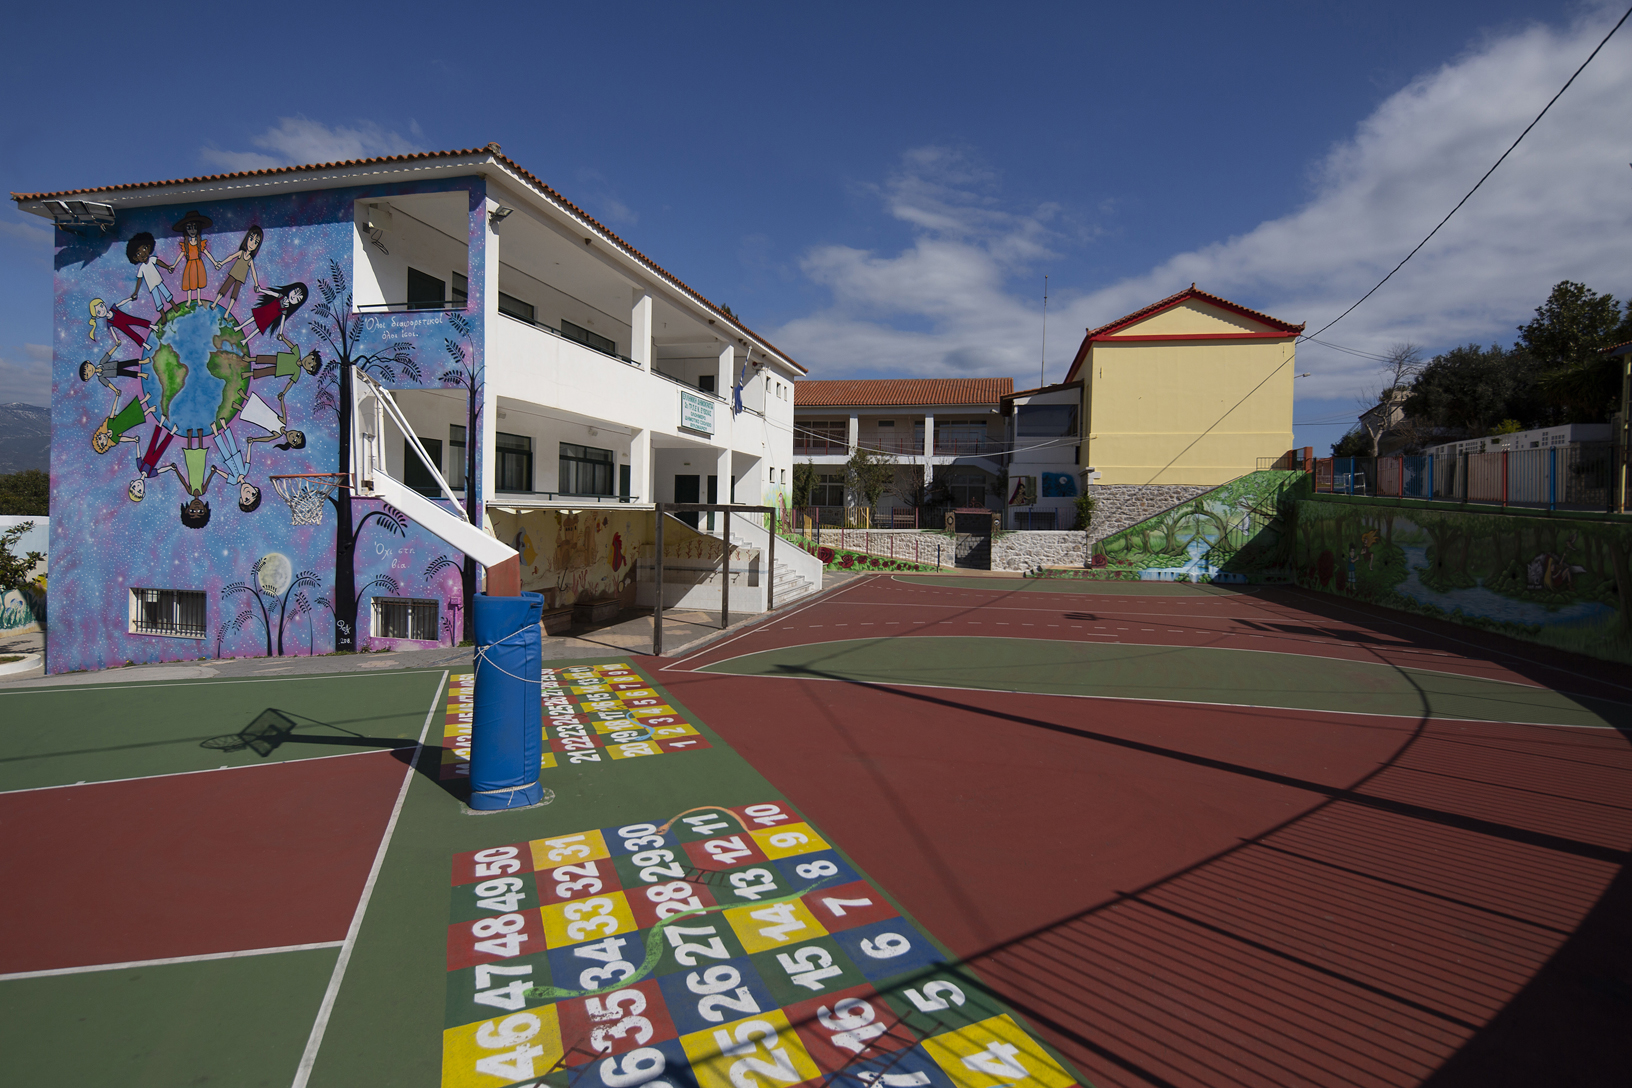 Δημοτικό σχολείο Αυλωναρίου. Φωτογραφία: ©Βασίλης Συκάς, για τον Δήμο Κύμης-Αλιβερίου